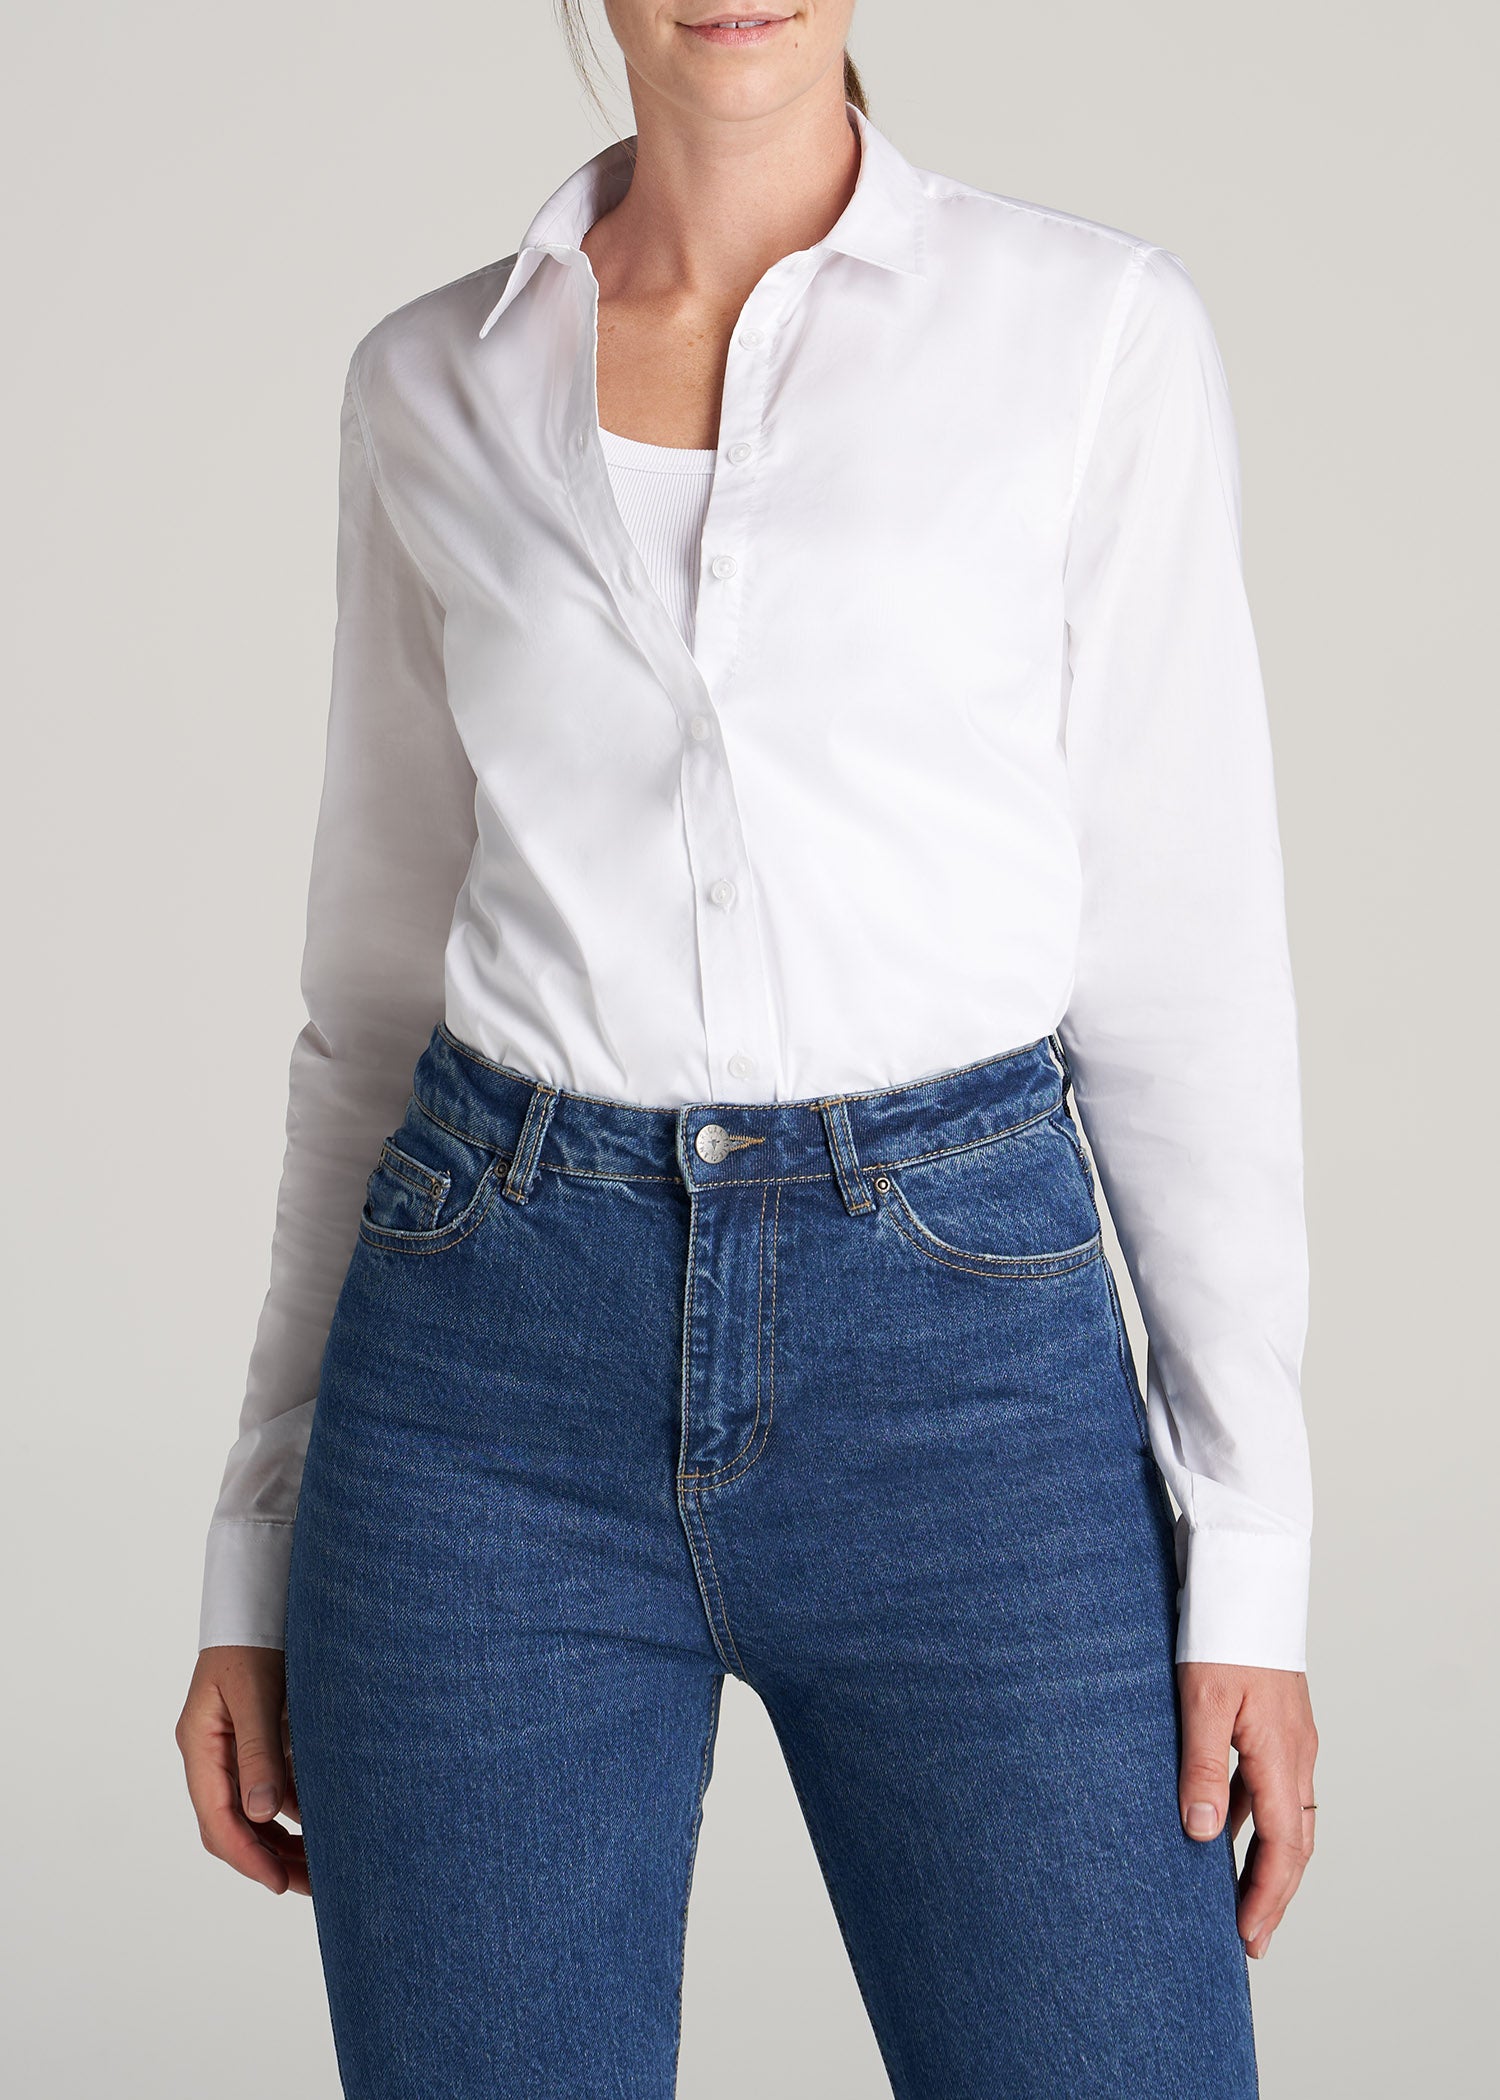 Women Casual Business Button Down Shirt Long Sleeve Office Work Wear Blouse  Tops 